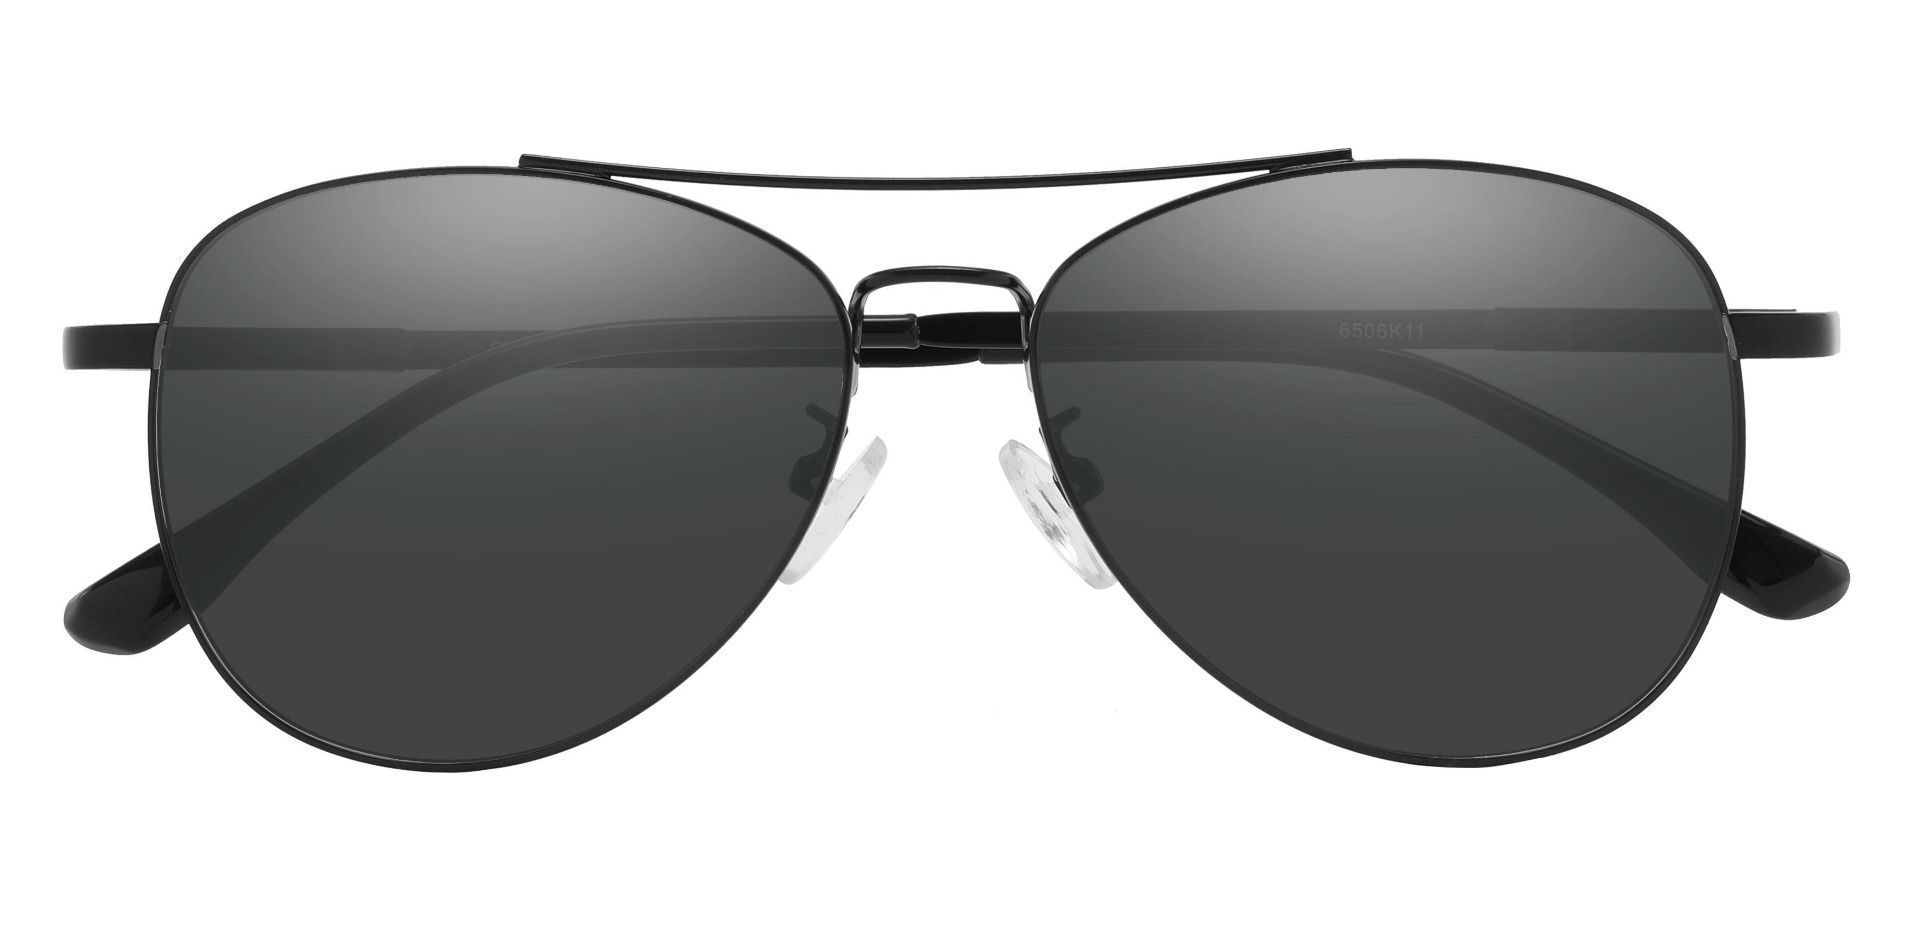 Sterling Aviator Prescription Sunglasses - Black Frame With Gray Lenses